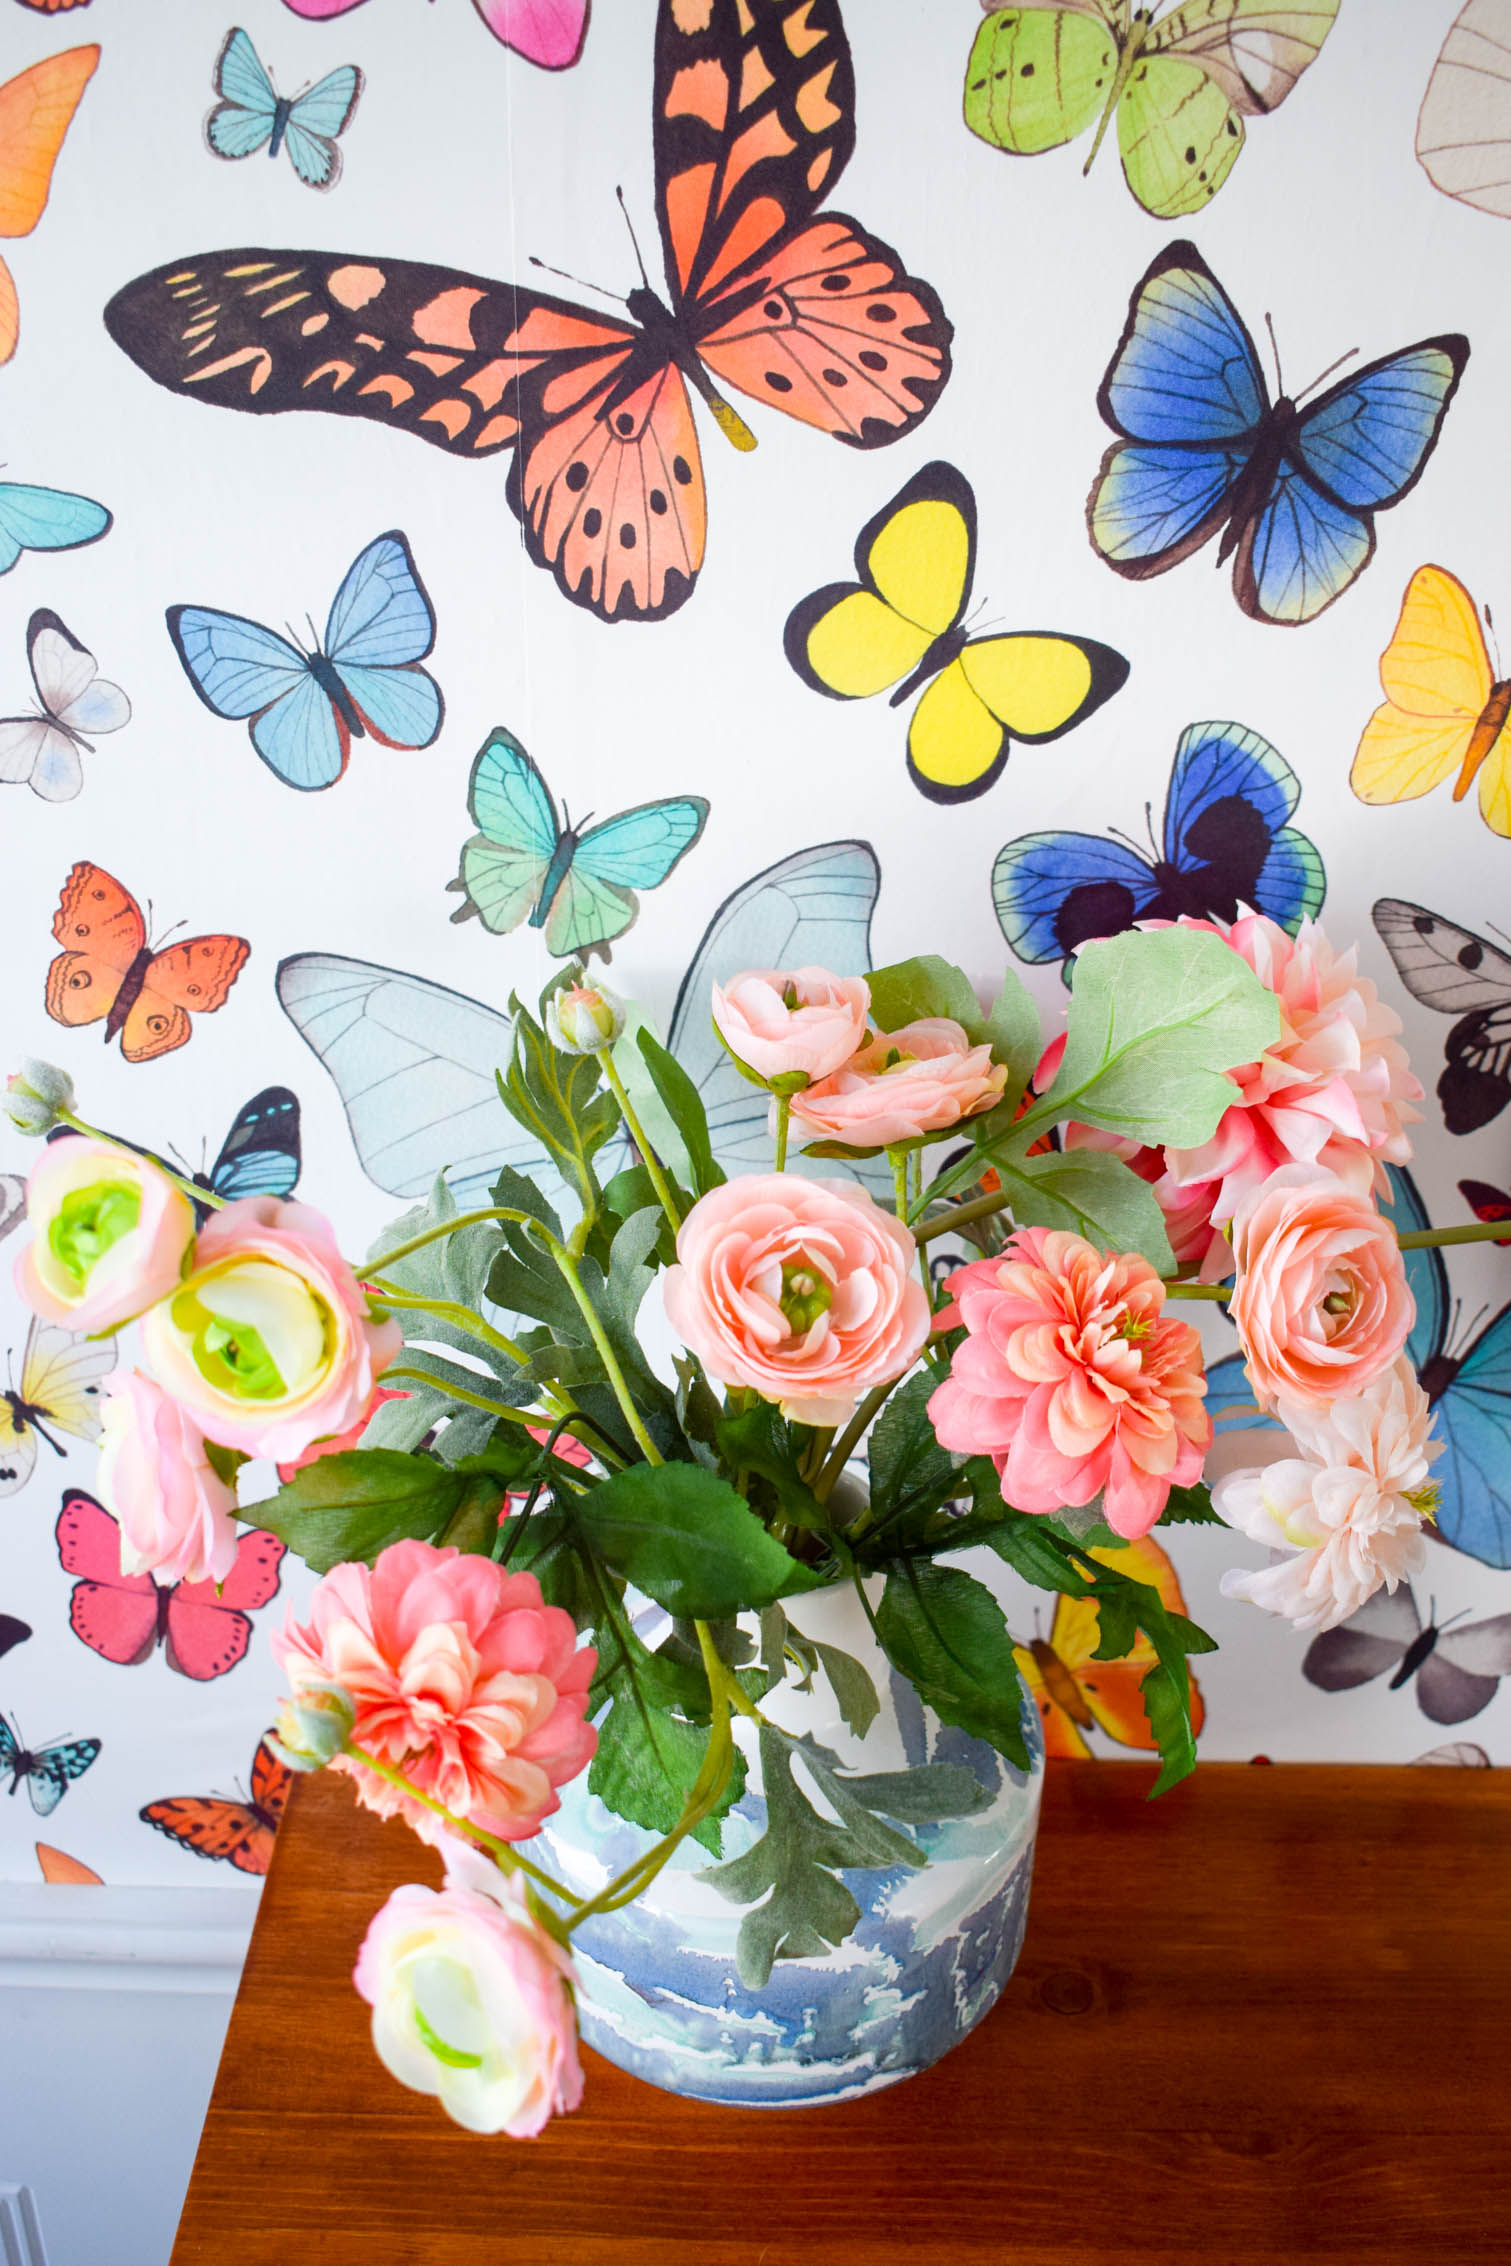 Artificial Flower , HD Wallpaper & Backgrounds